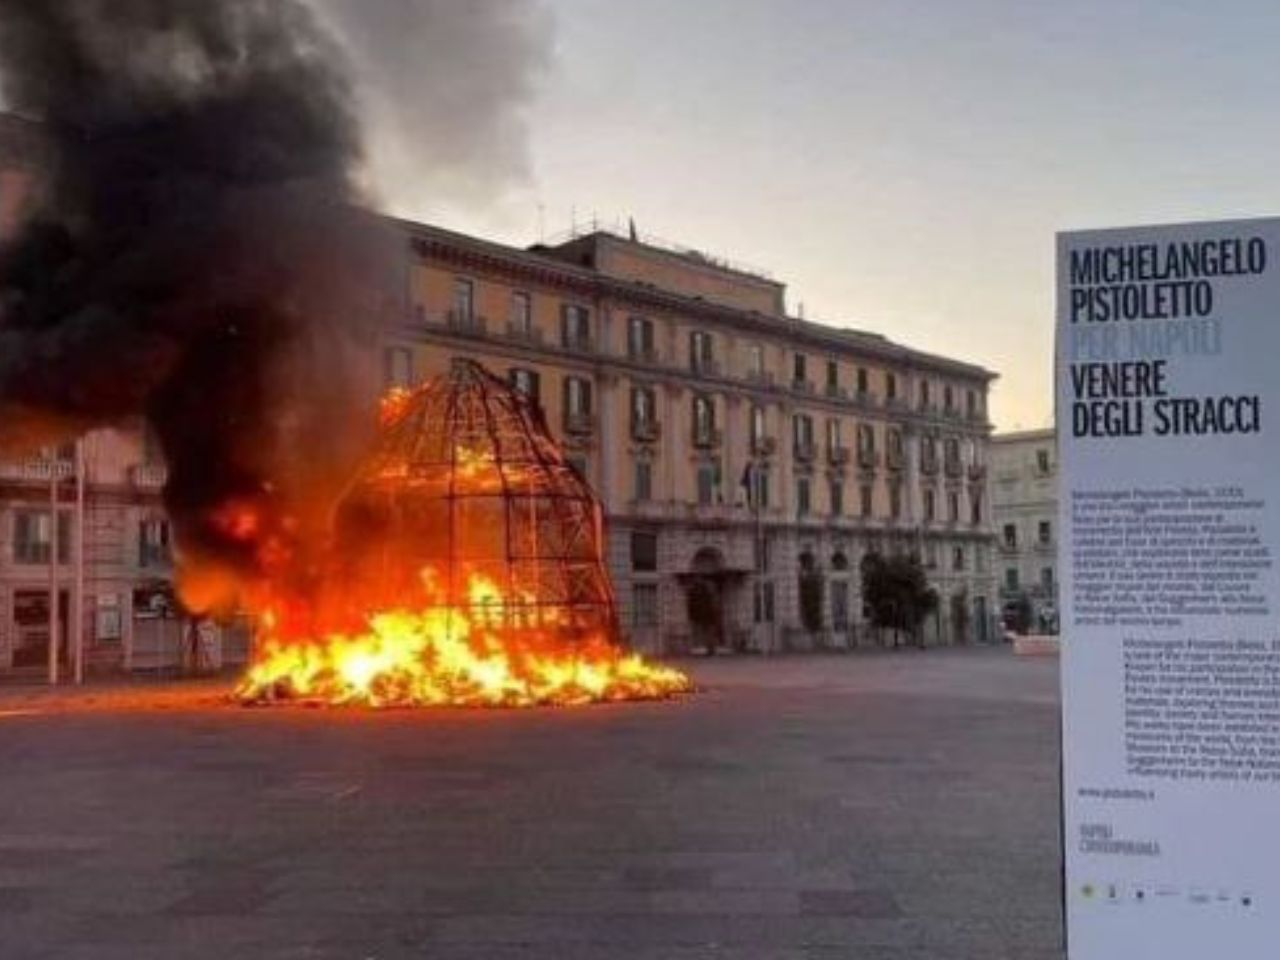 A fuoco la Venere degli stracci di Pistoletto nel centro di Napoli